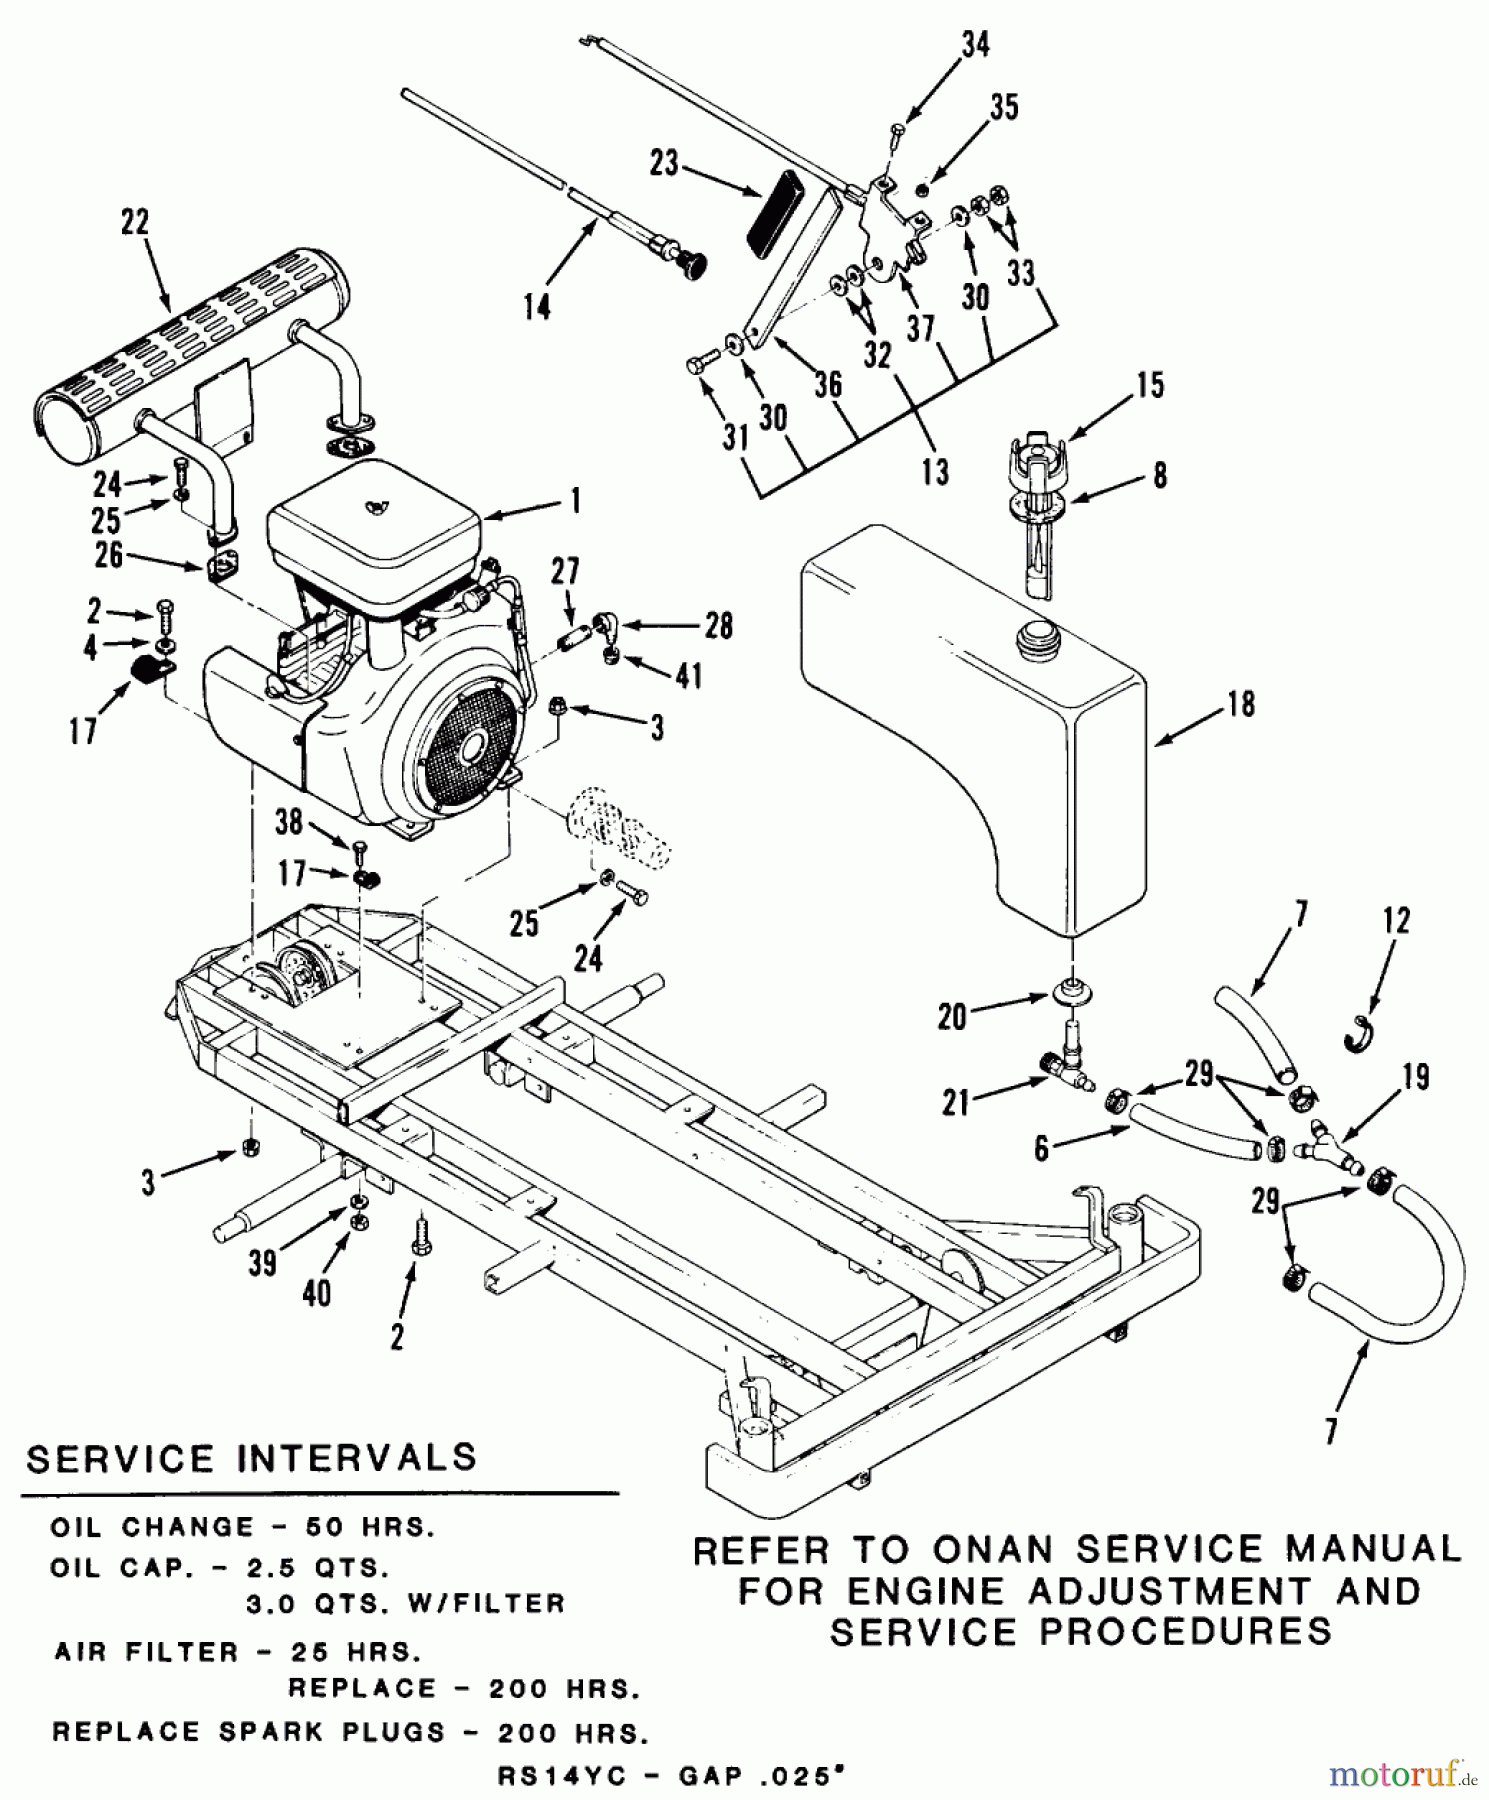  Toro Neu Mowers, Zero-Turn Z1-24OE01 (724-Z) - Toro 724-Z Tractor, 1988 SECTION 3-ENGINE AND FUEL SYSTEMS